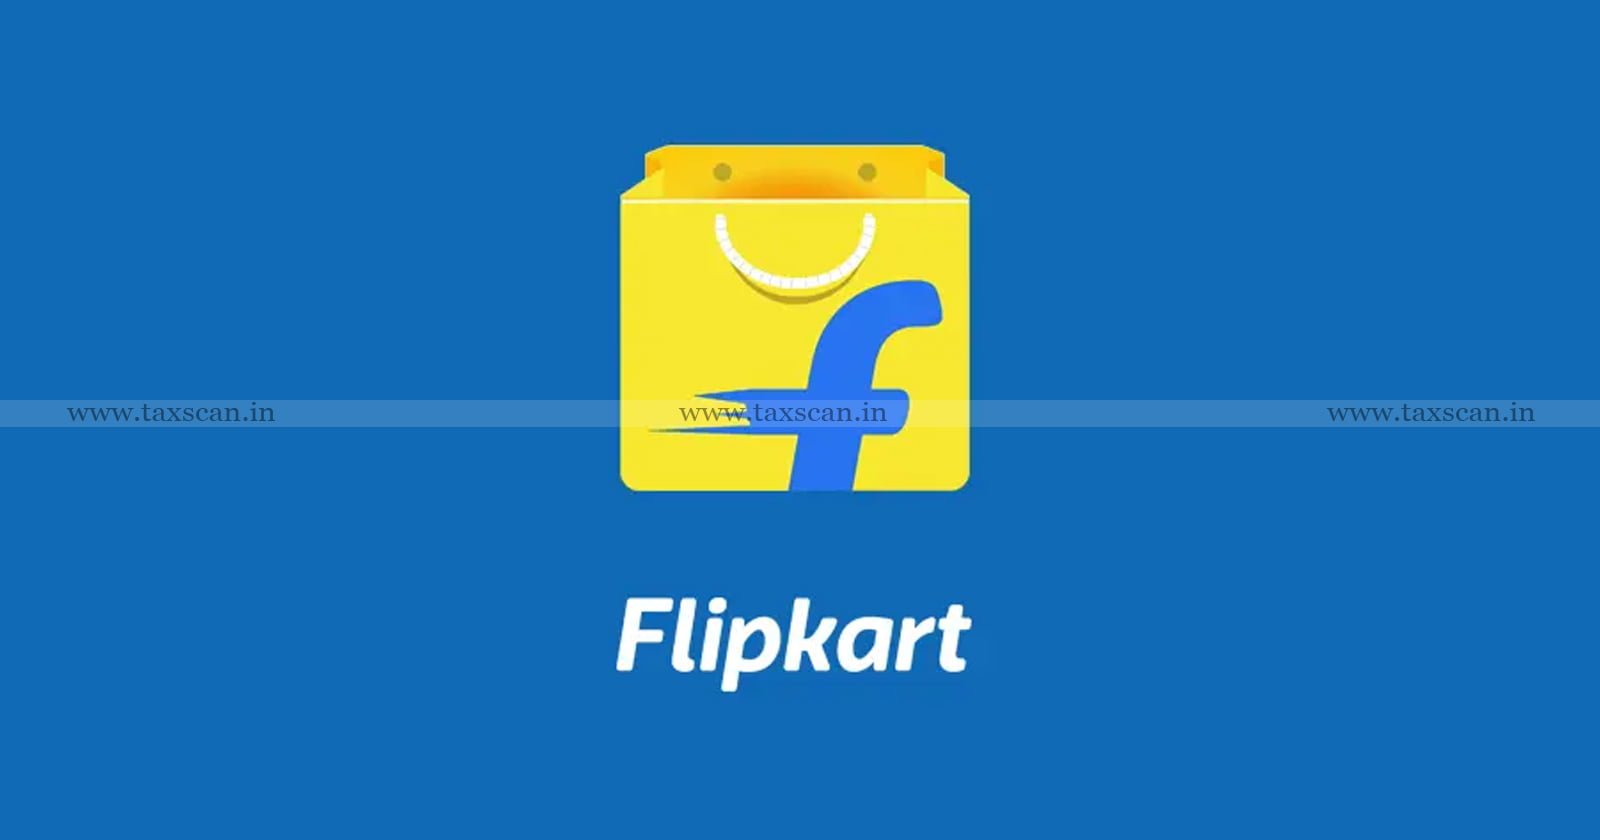 Profit - Flipkart India - Flipkart - Selling Goods - Goodwill - ITAT - Income Tax - Tax - Taxscan